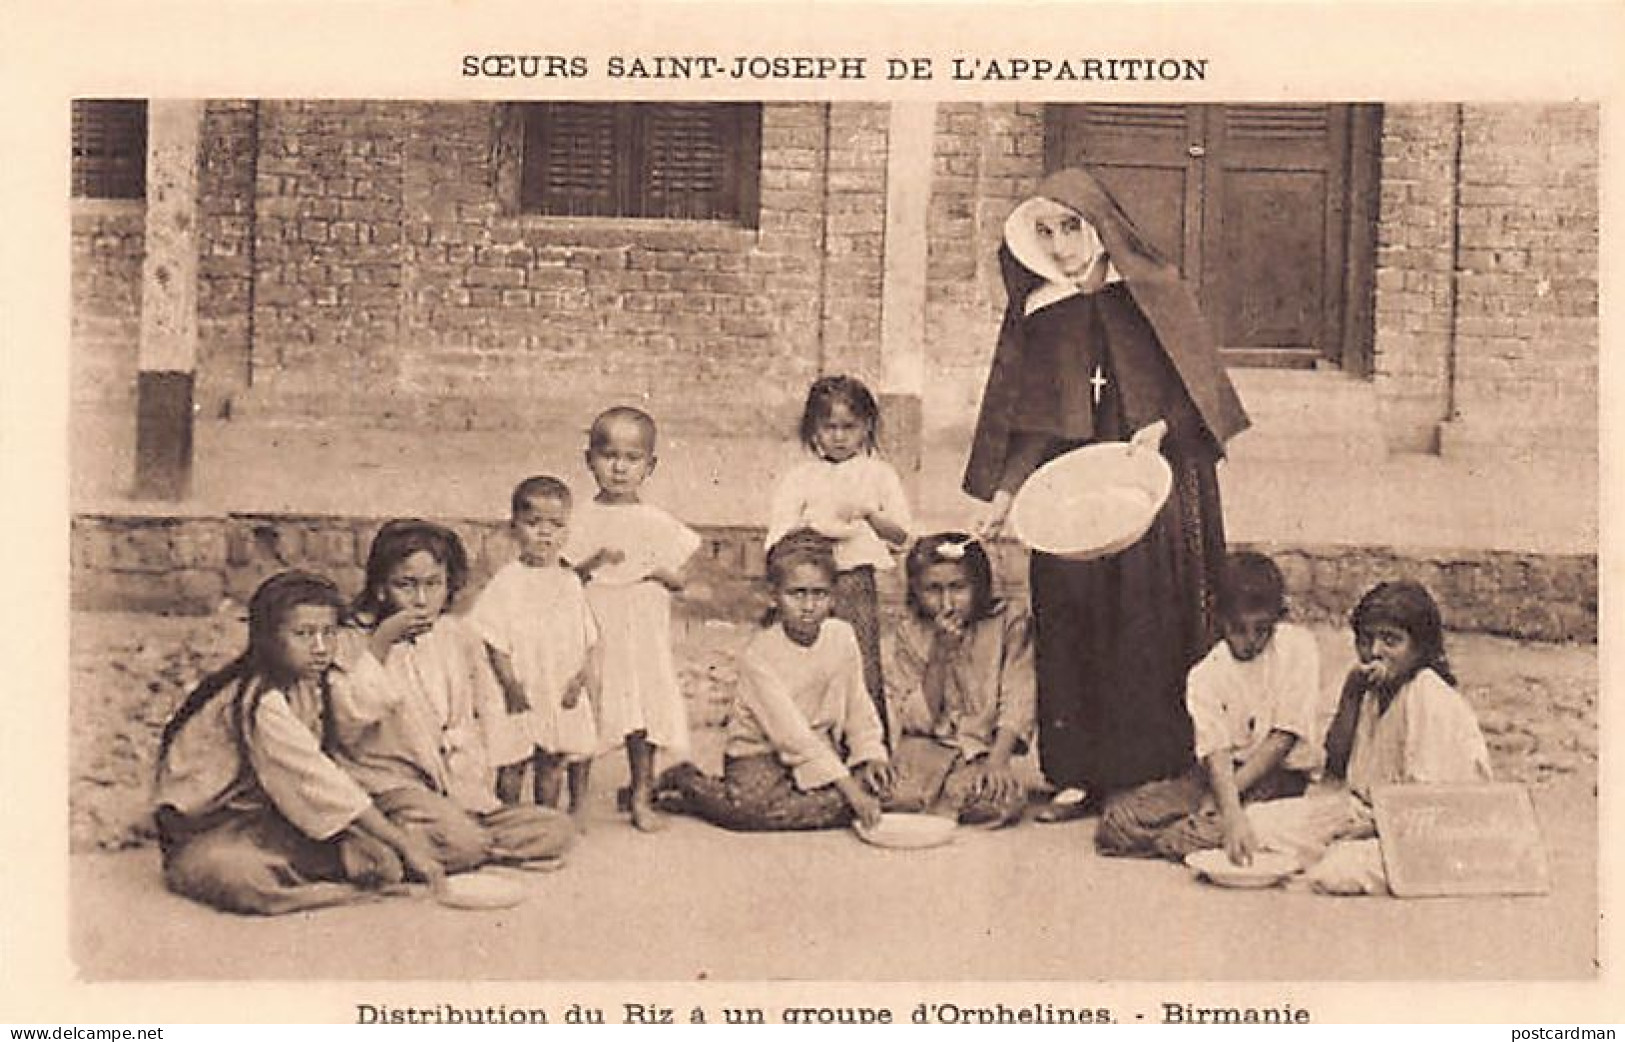 BURMA - Distribution Of Rice To A Group Of Orphans - Publ. Soeurs Saint-Joseph De L'Apparition - Myanmar (Burma)